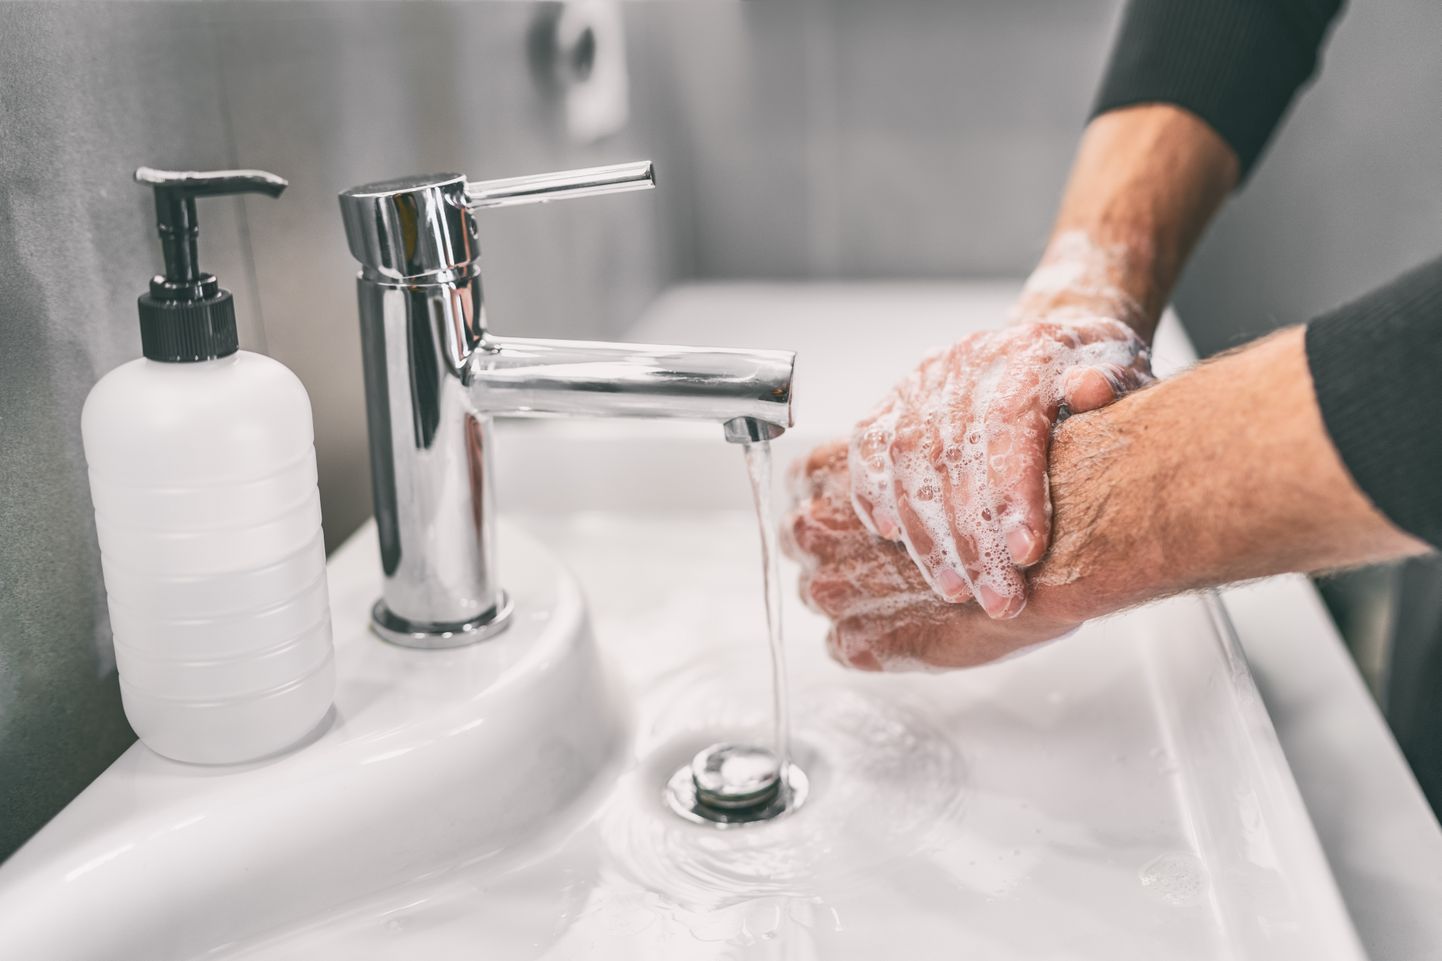 Мытье рук играет большую роль в профилактике коронавируса.